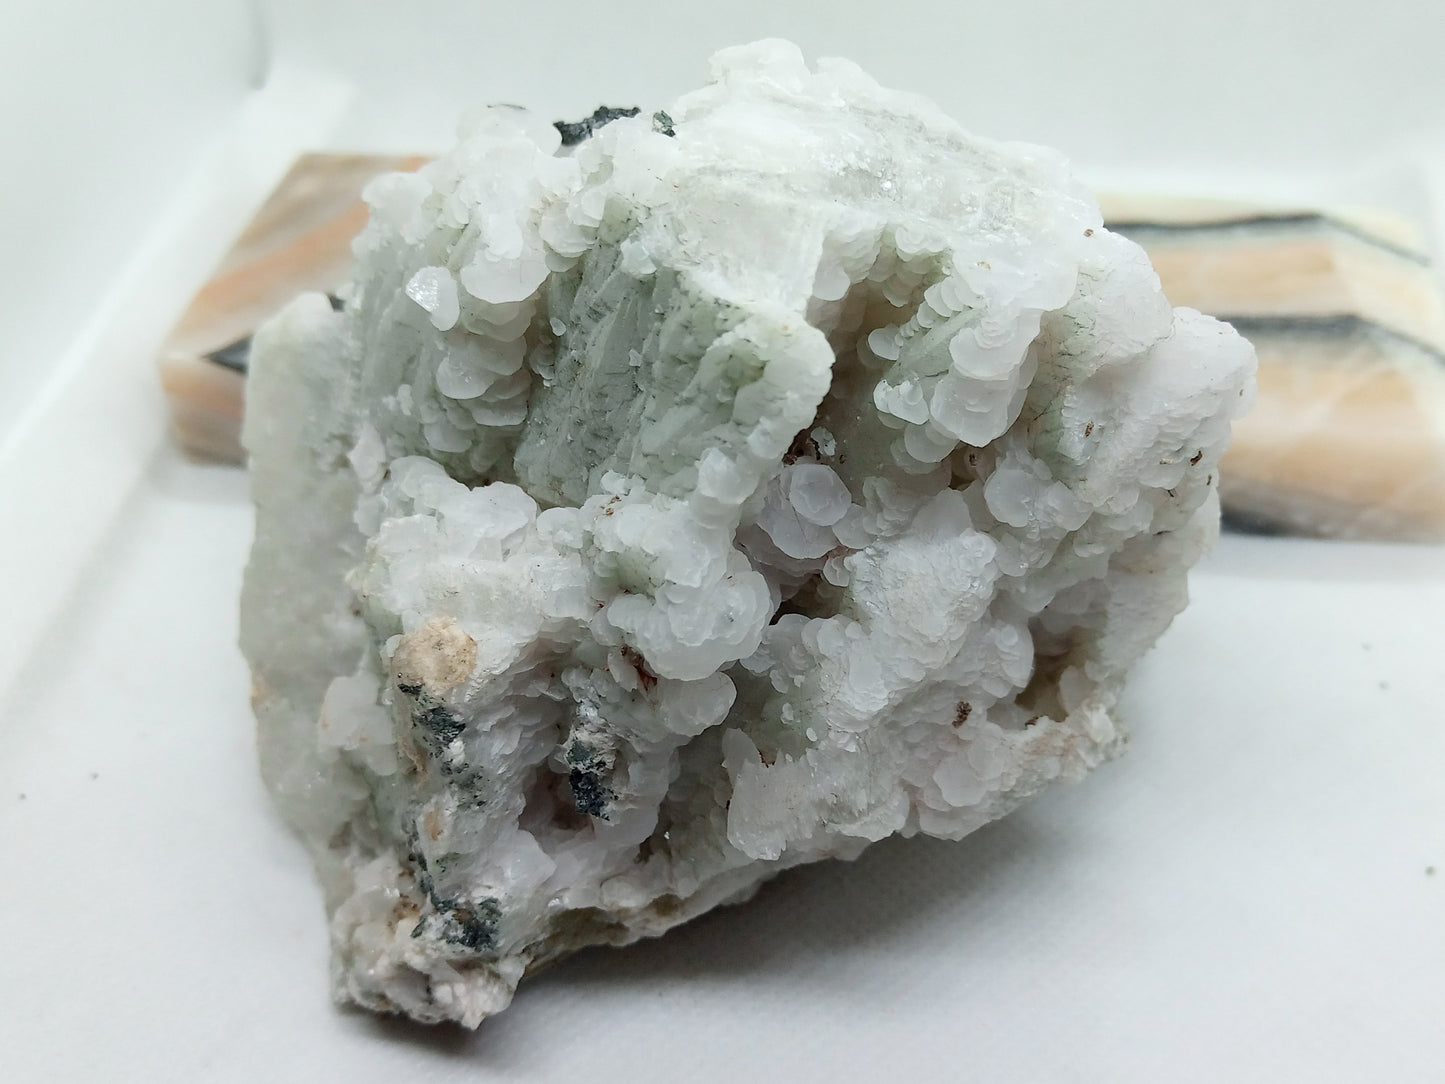 Drusen of scaly calcite